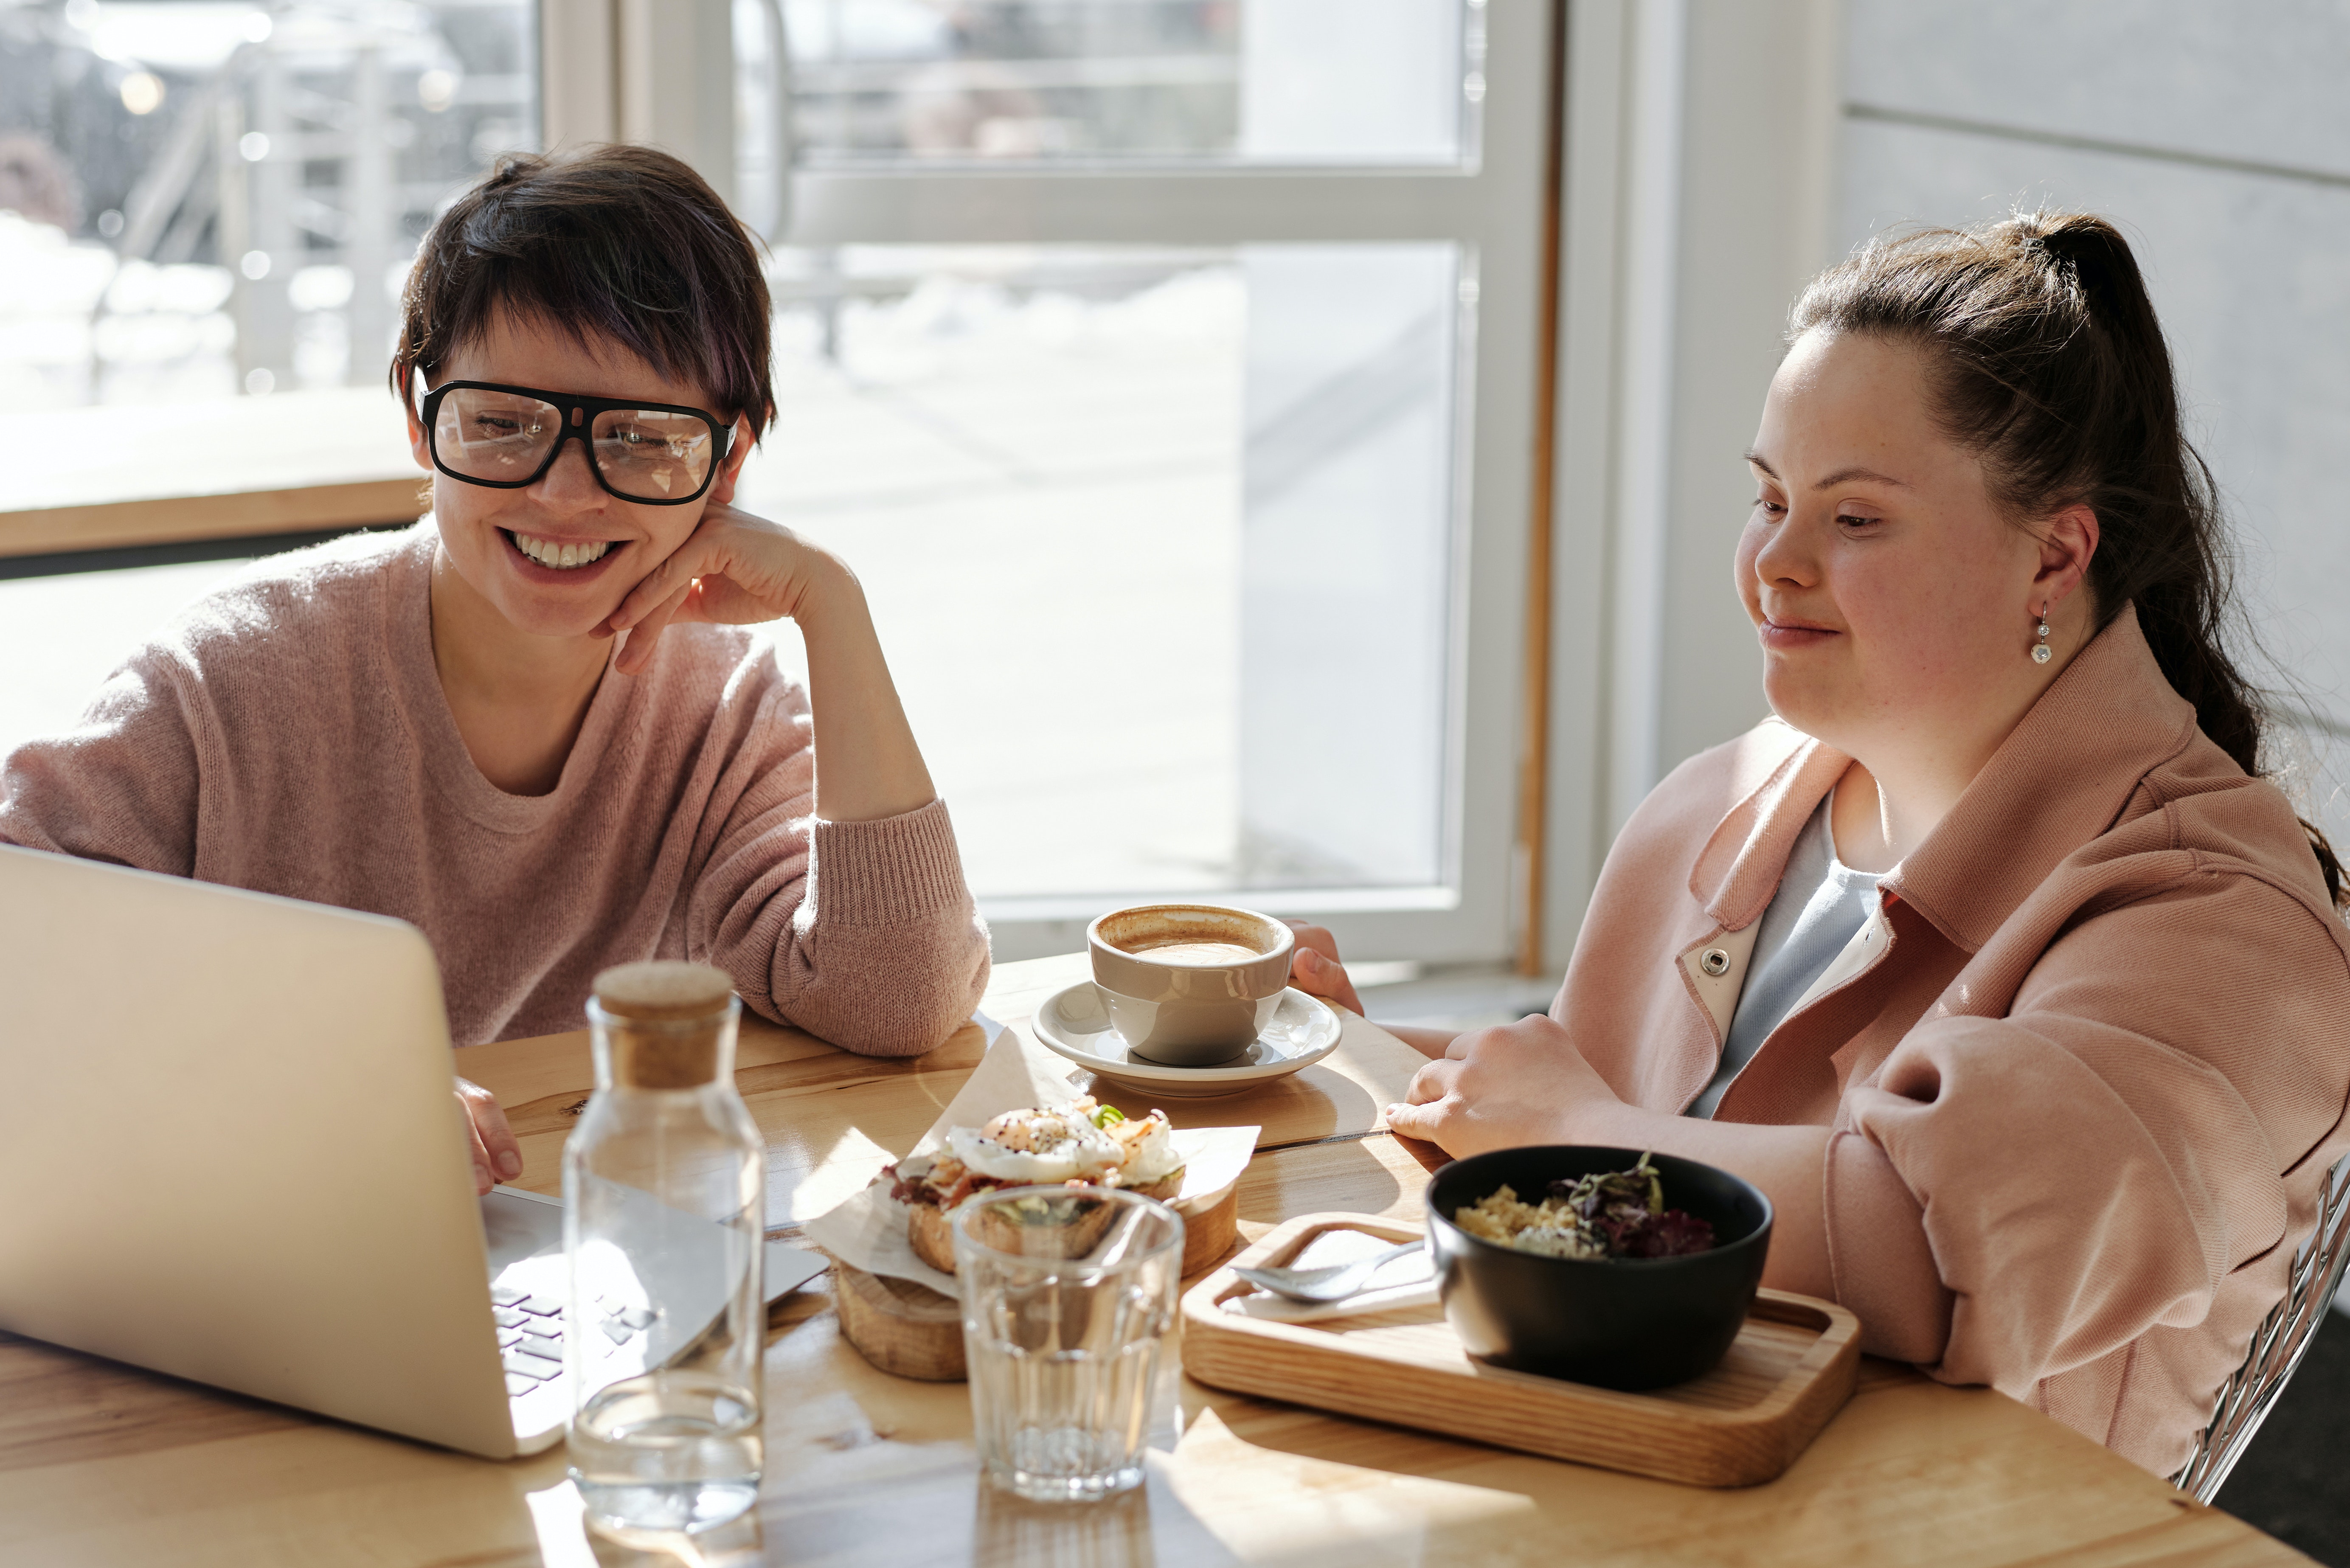 mulher branca com síndrome de down sentada à mesa com outra mulher branca, que usa óculos. Elas sorriem enquanto olham para tela do notebook.